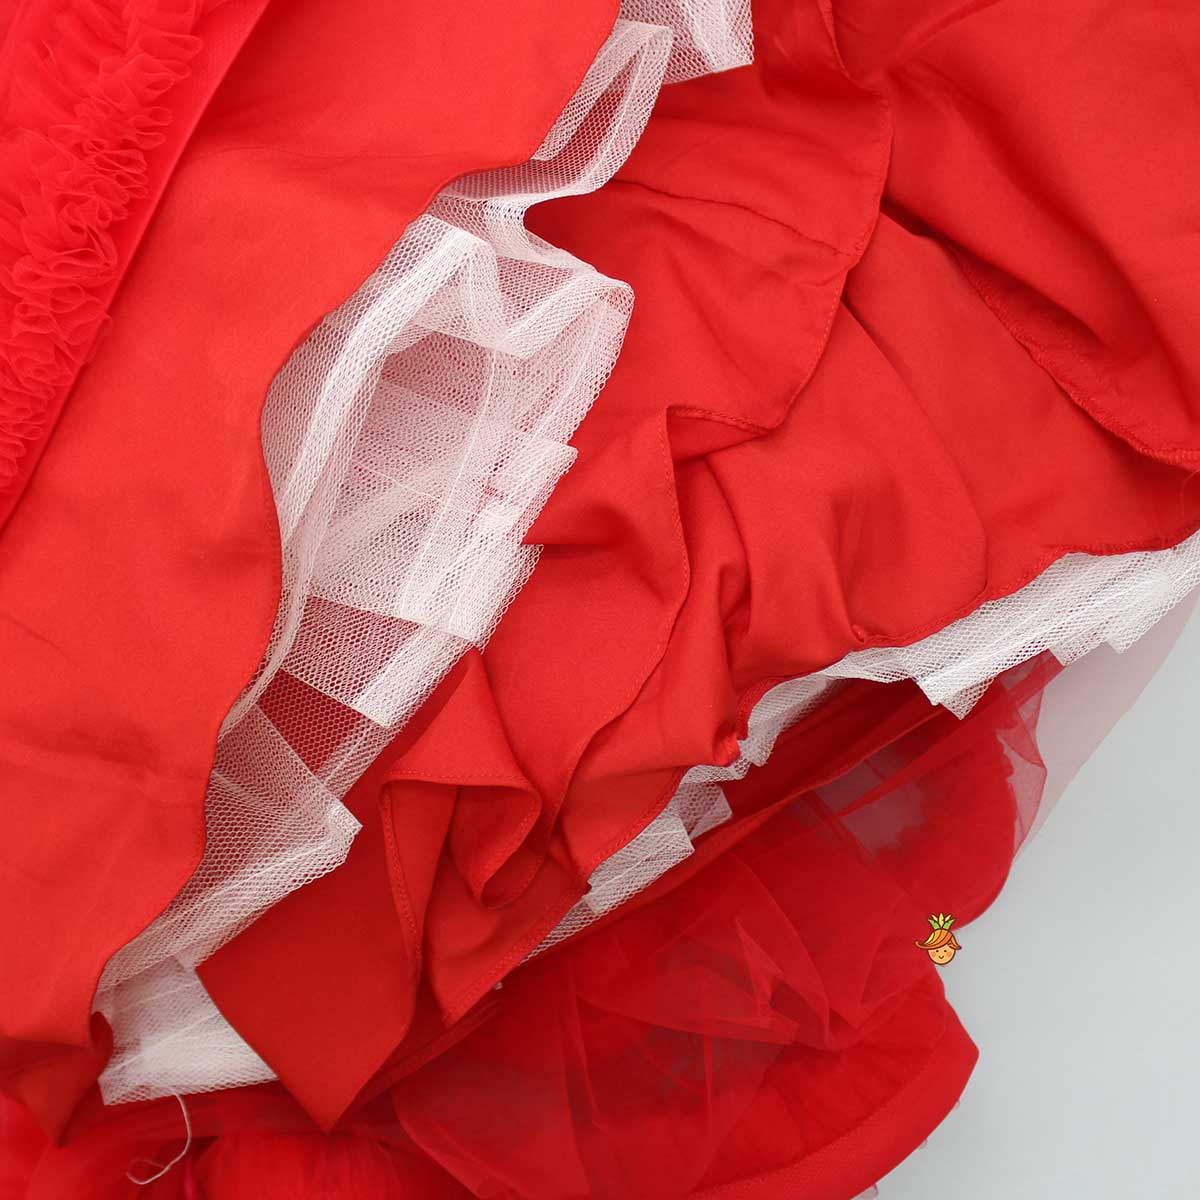 Fabulous Red Swirled Top With Ruffle Layered Lehenga